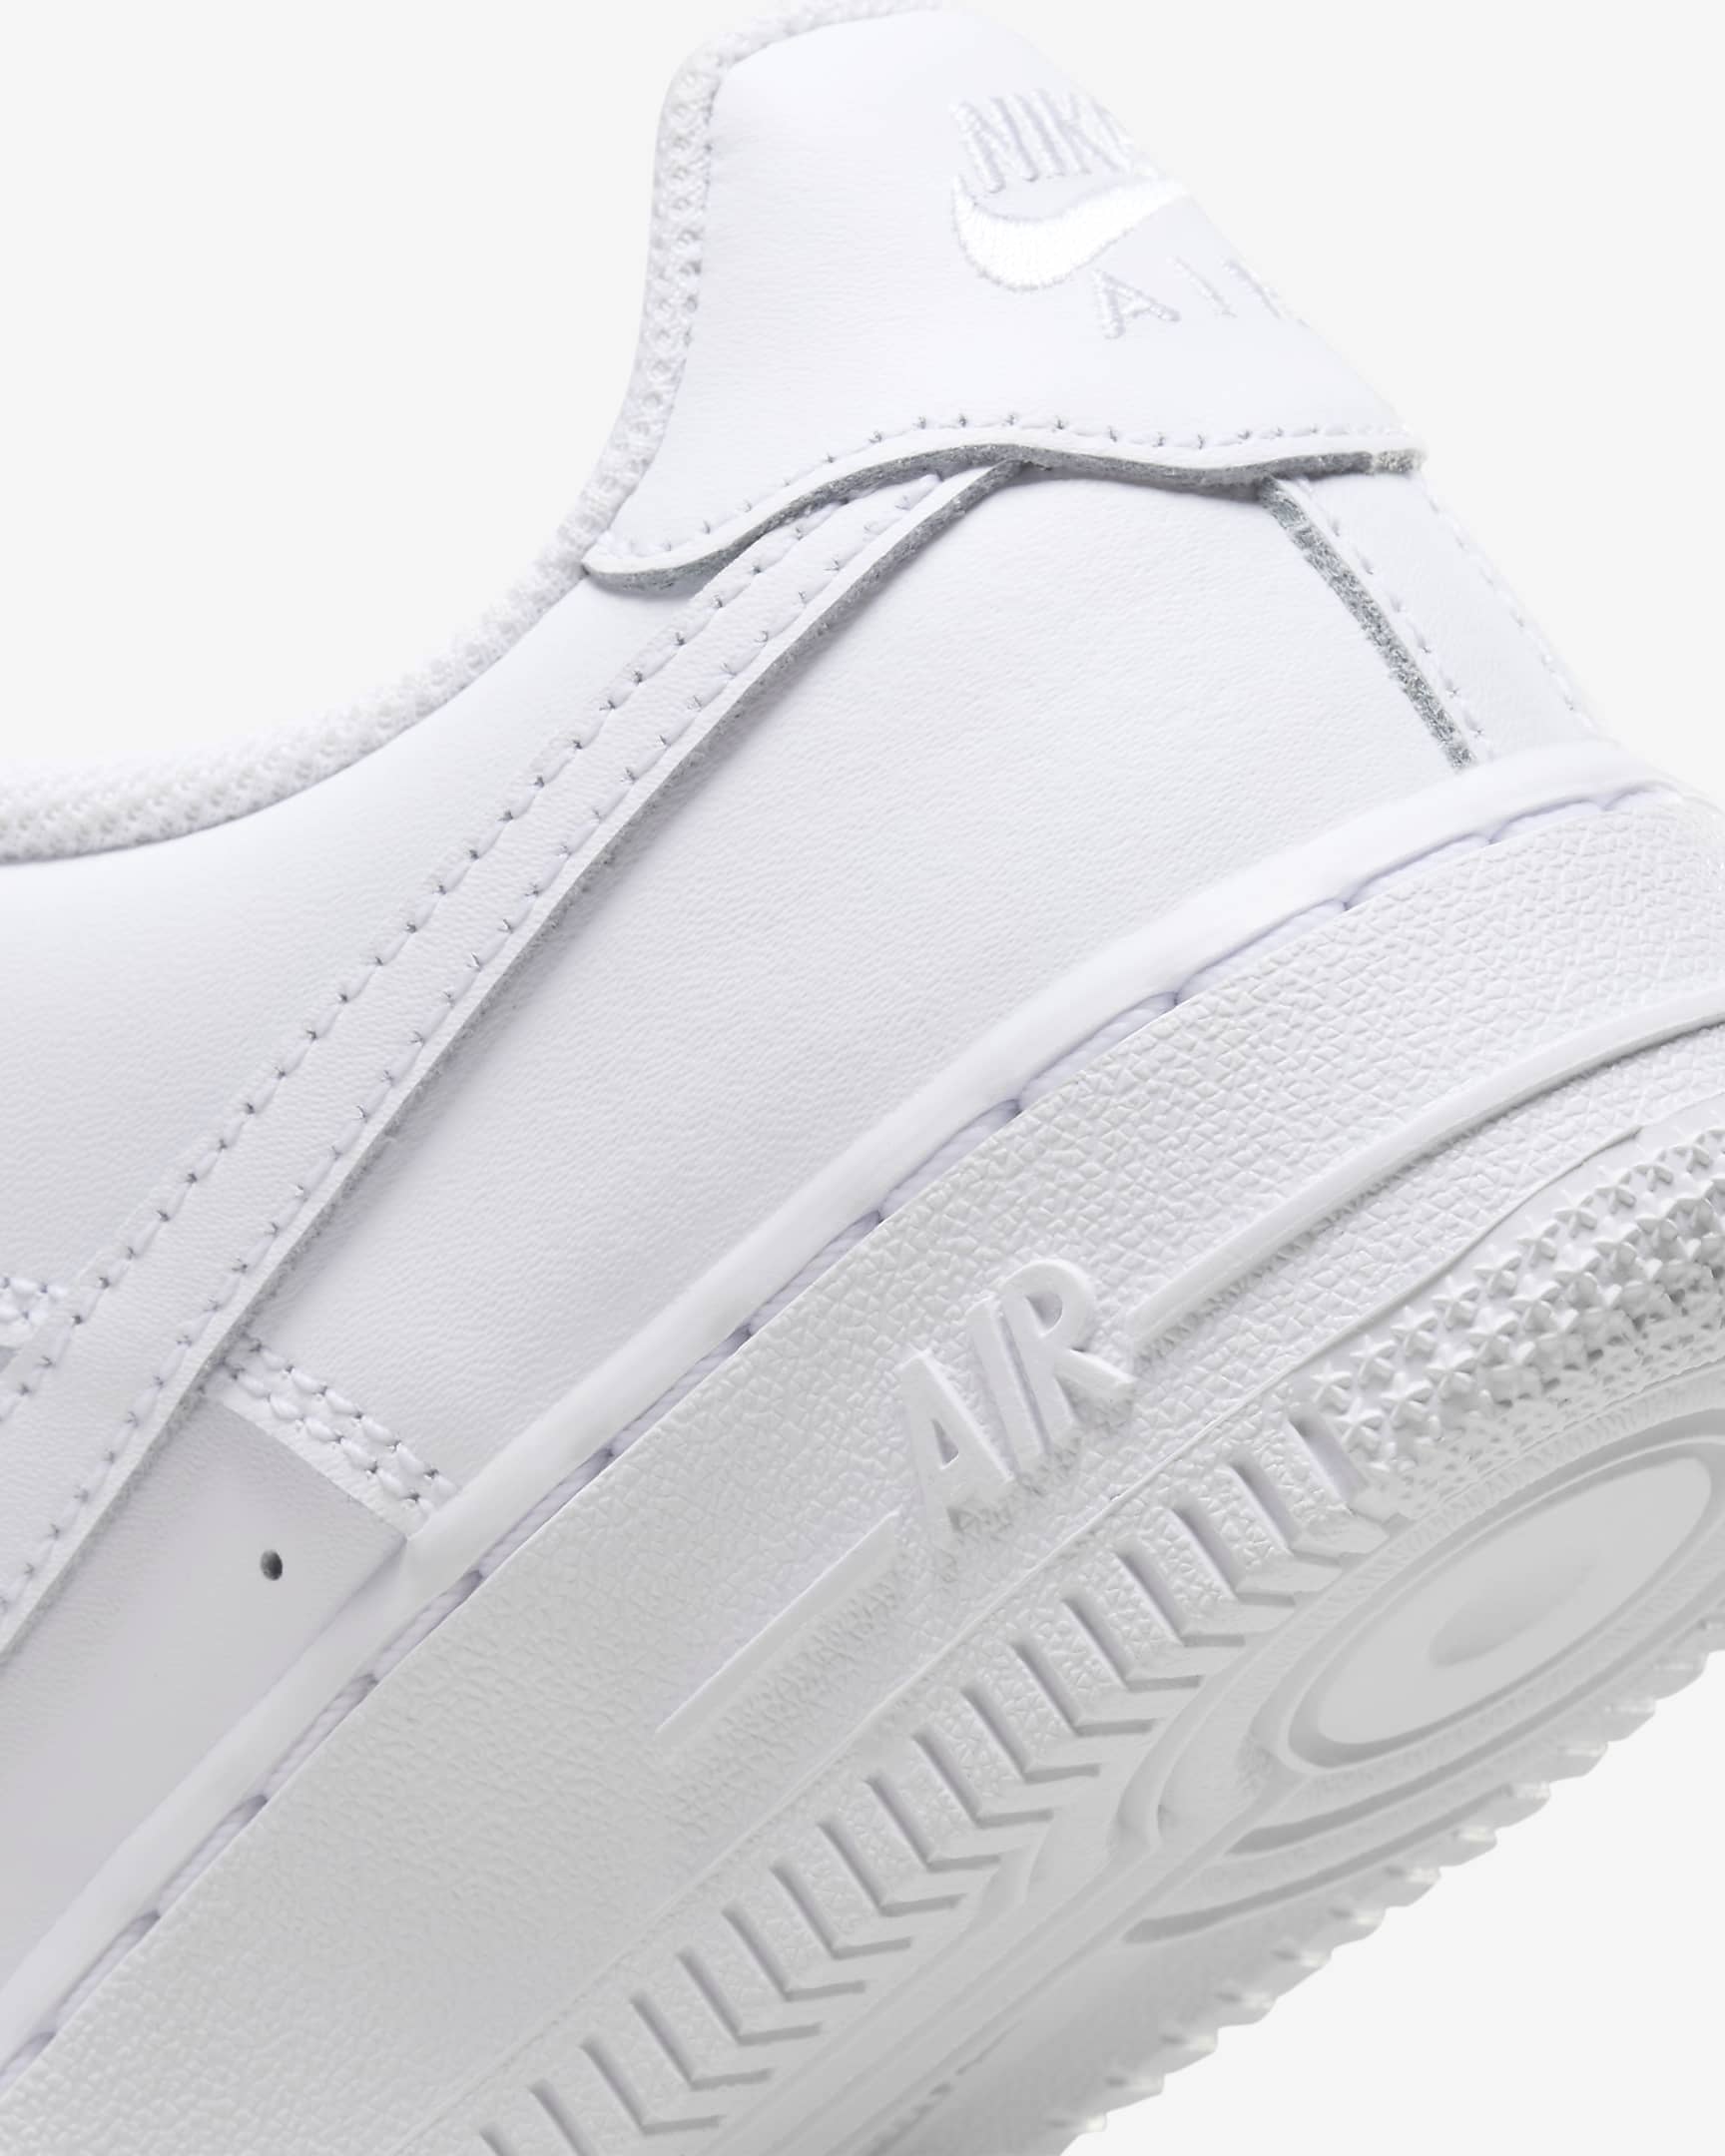 Nike Air Force 1 LE-sko til større børn - hvid/hvid/hvid/hvid